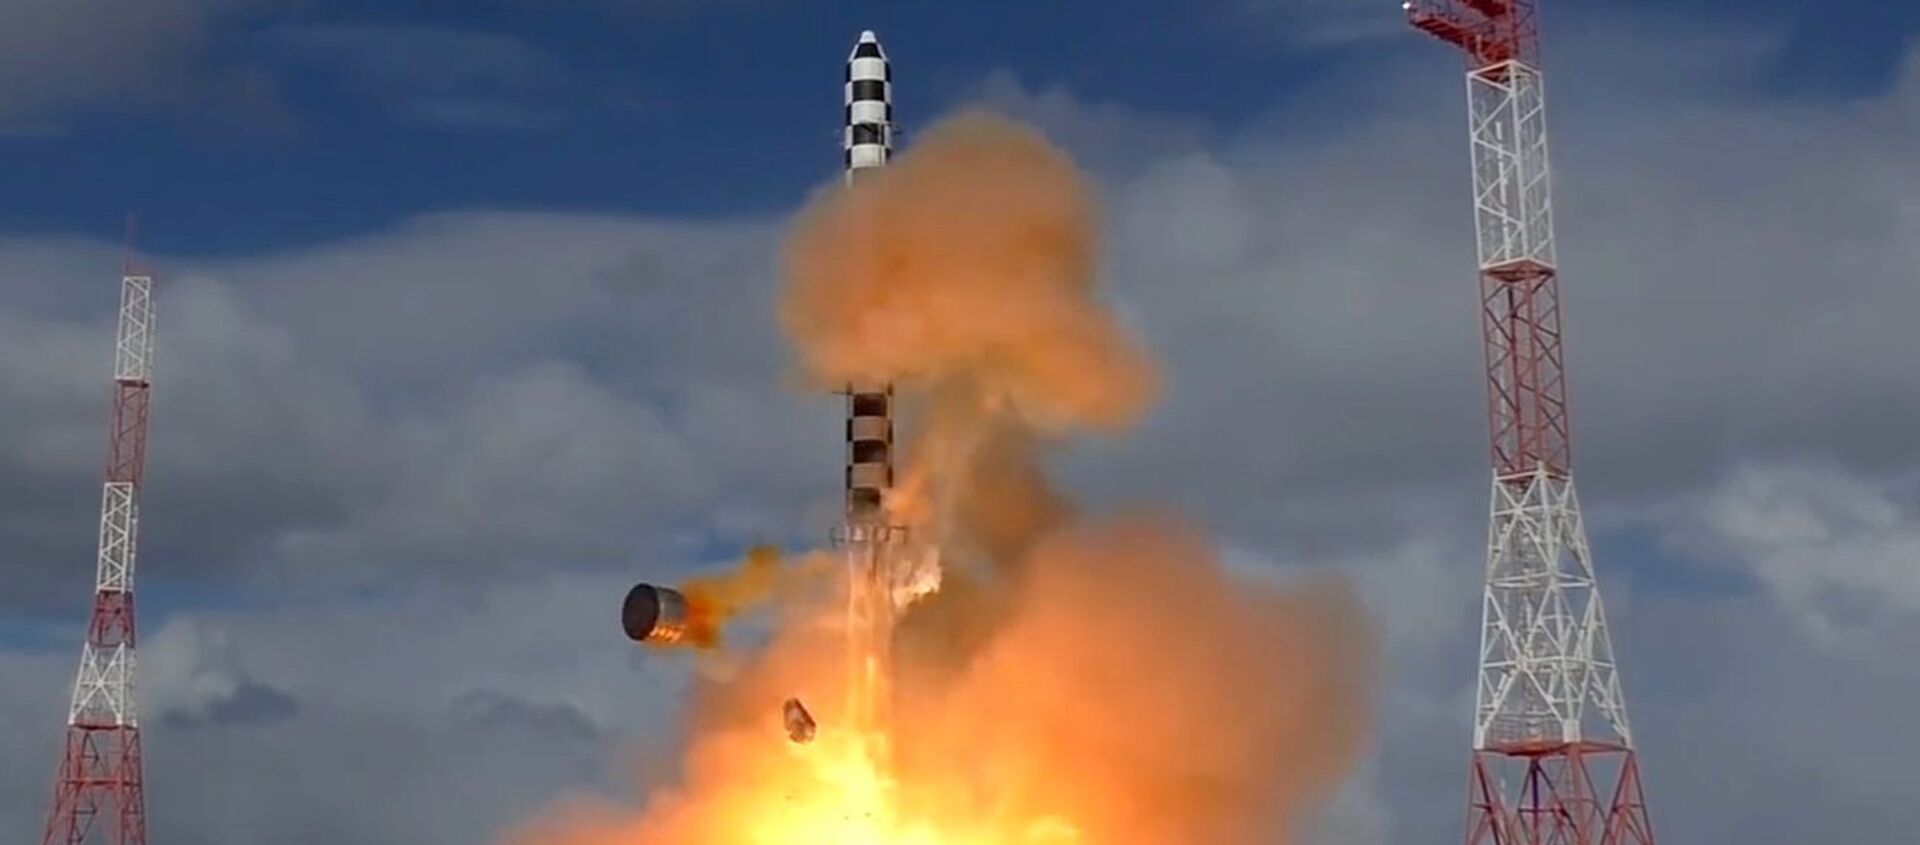 Запуск межконтинентальной баллистической ракеты Сармат - Sputnik Беларусь, 1920, 31.03.2021